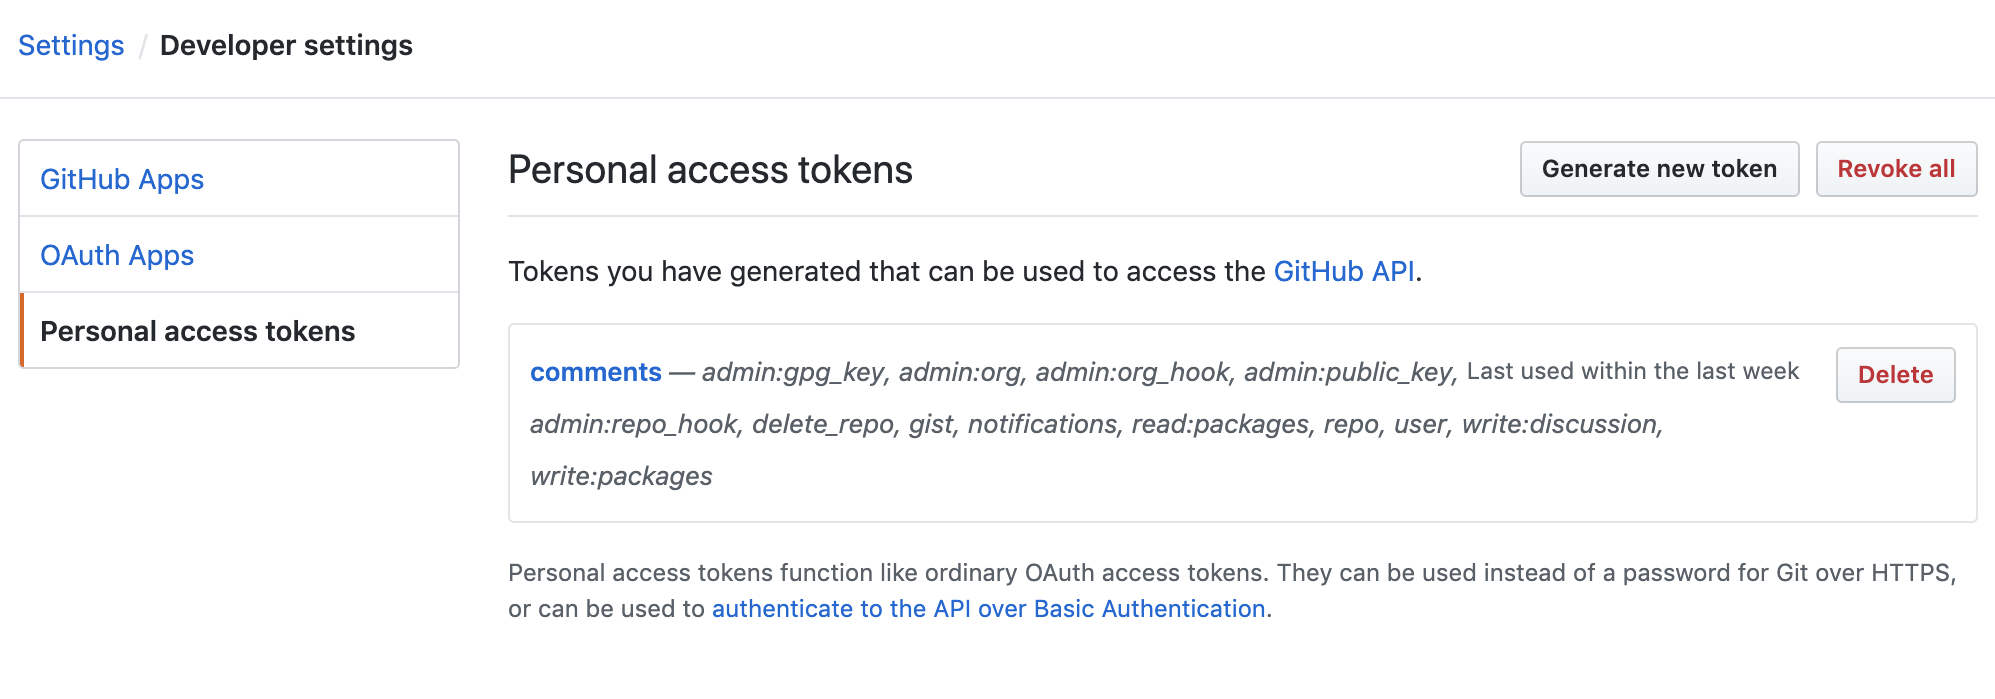 GitHub developer settings